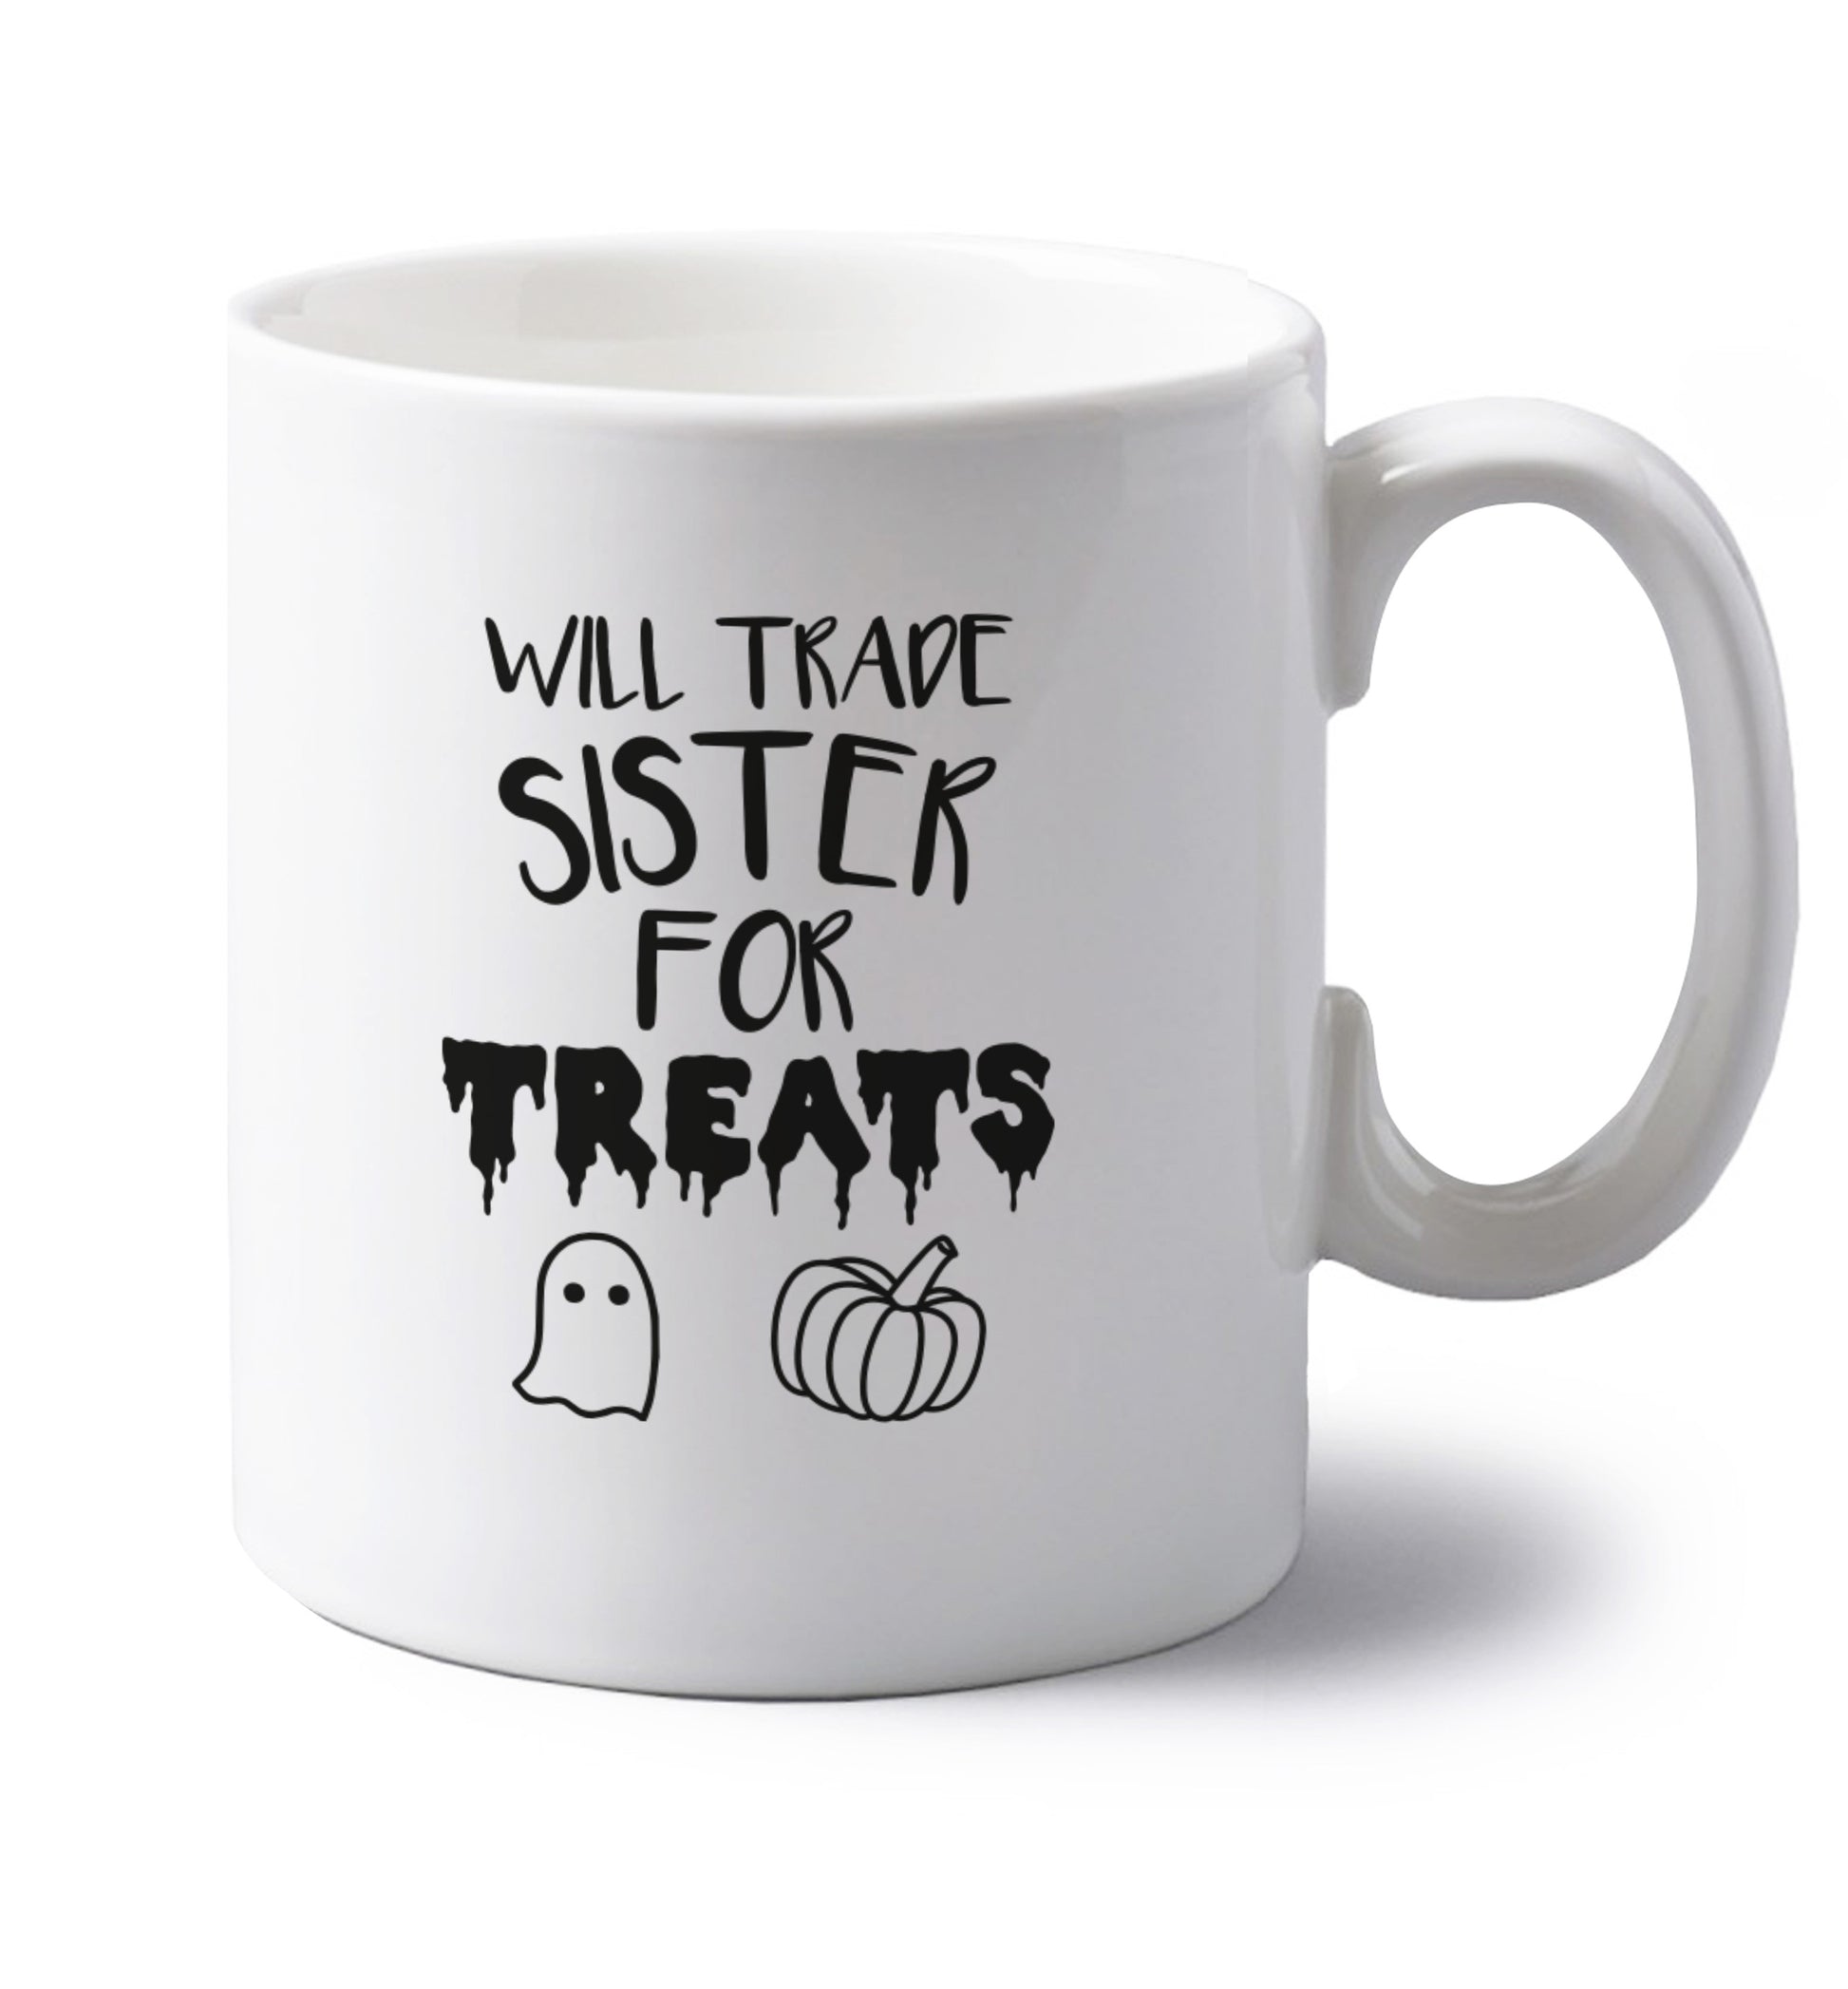 Will trade sister for treats left handed white ceramic mug 